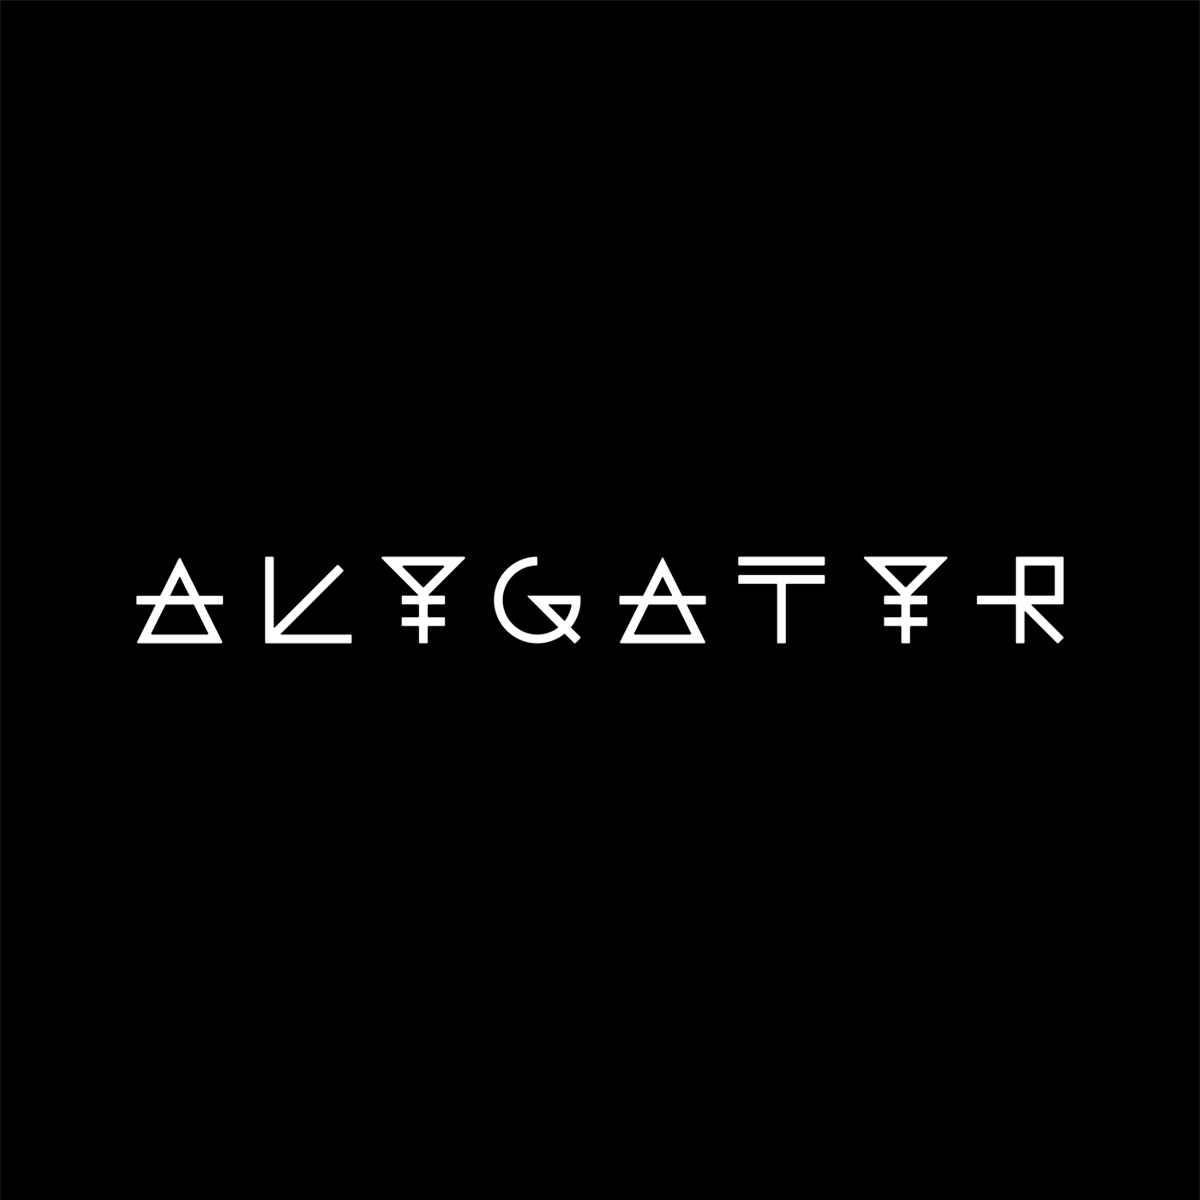 "alygatyr" de Kasabian à écouter sur Vibration Poprock